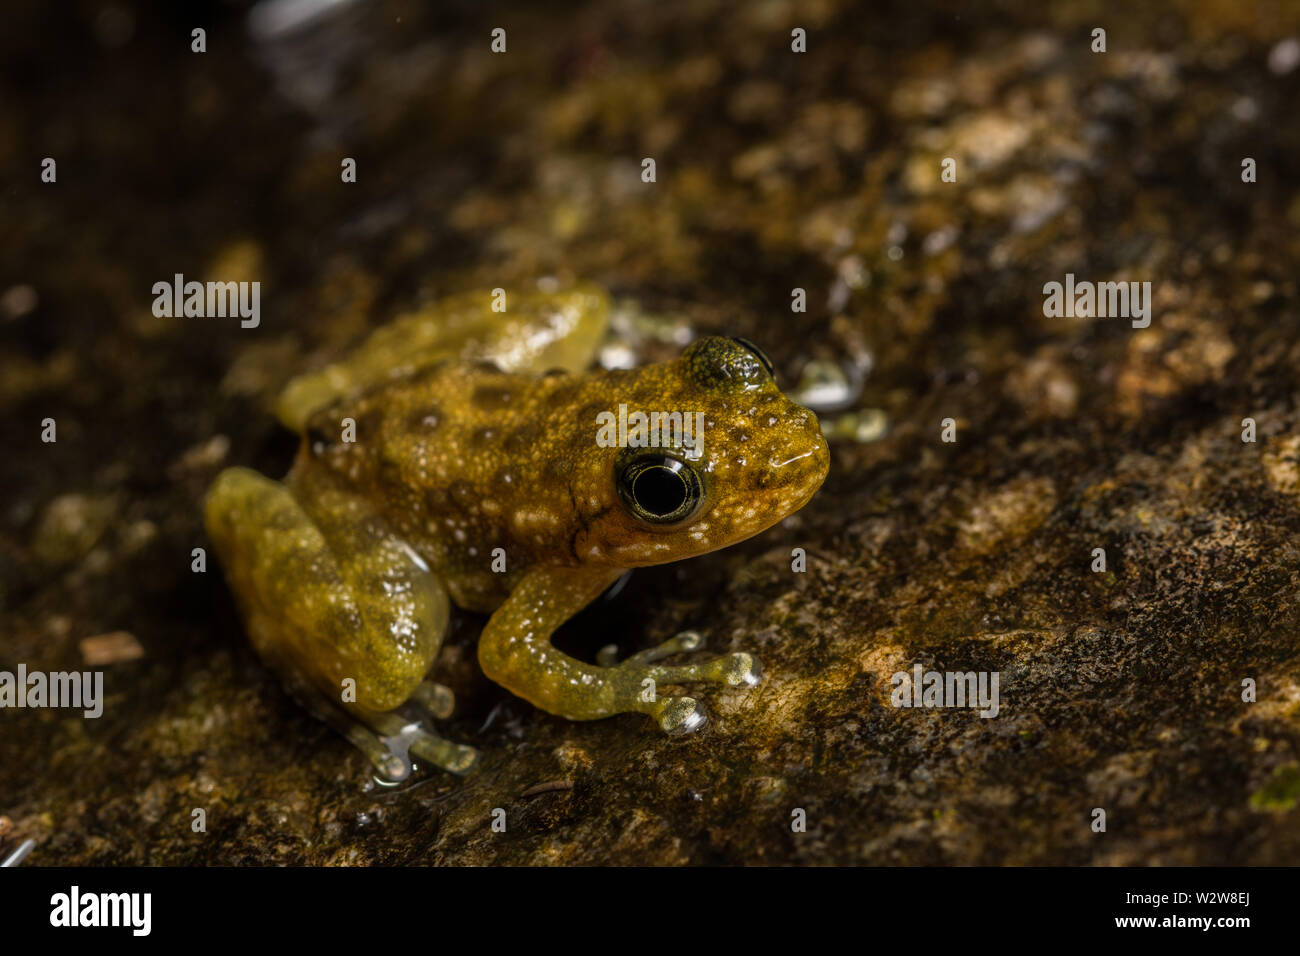 Hong Kong Cascade Frog (Amolops hongkongensis) from Hong Kong, Hong Kong. Stock Photo